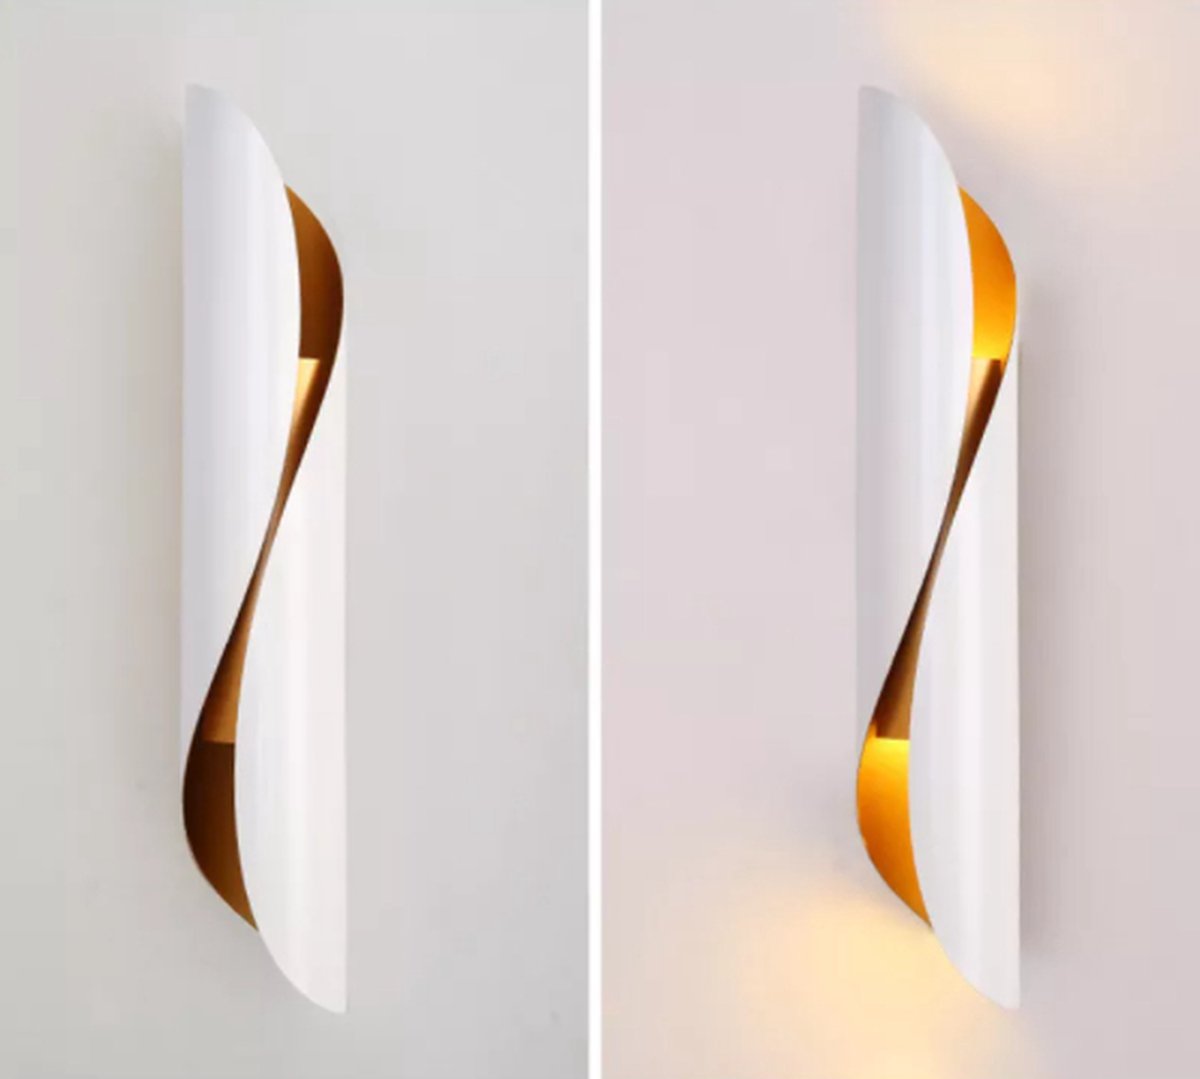 SensaHome LED Wandlamp set van 2 - Wit - Binnen Wandlamp Wit - Decoratie voor Binnenhuis - 12x48cm - Flower